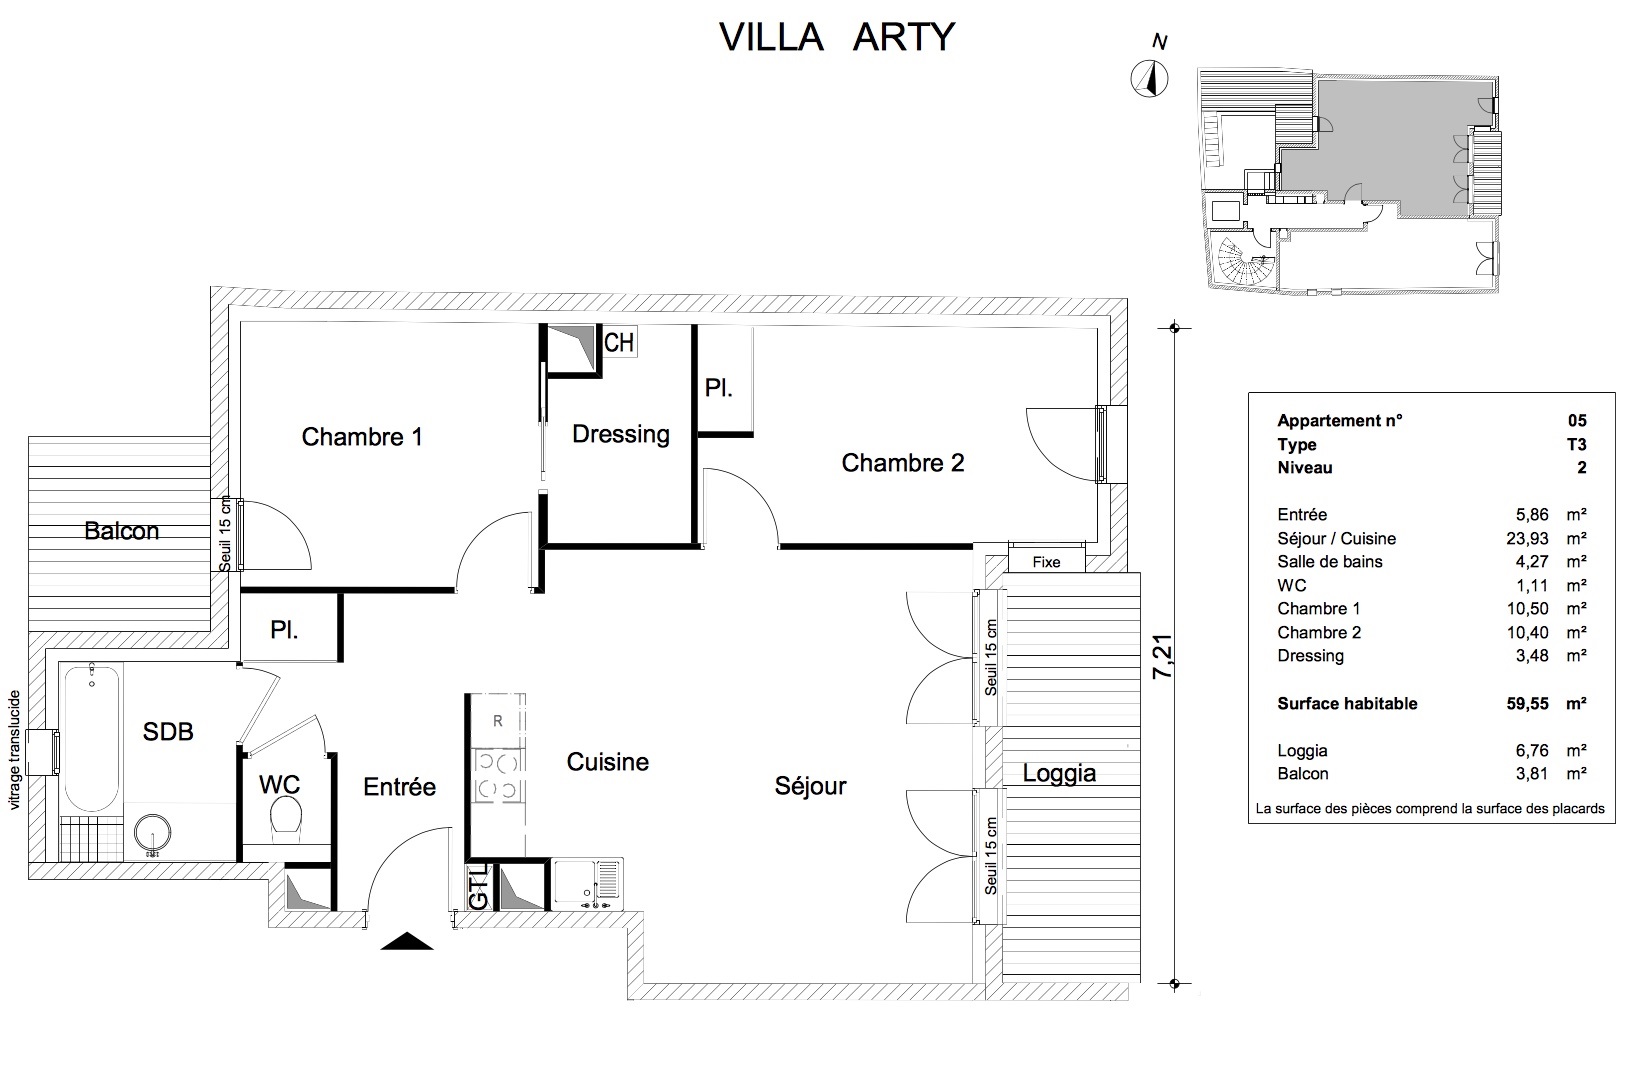 T3 - 59,55 m² - 2ème étage - Loggia 6,76 m² - Balcon 3,81 m² -VENDU